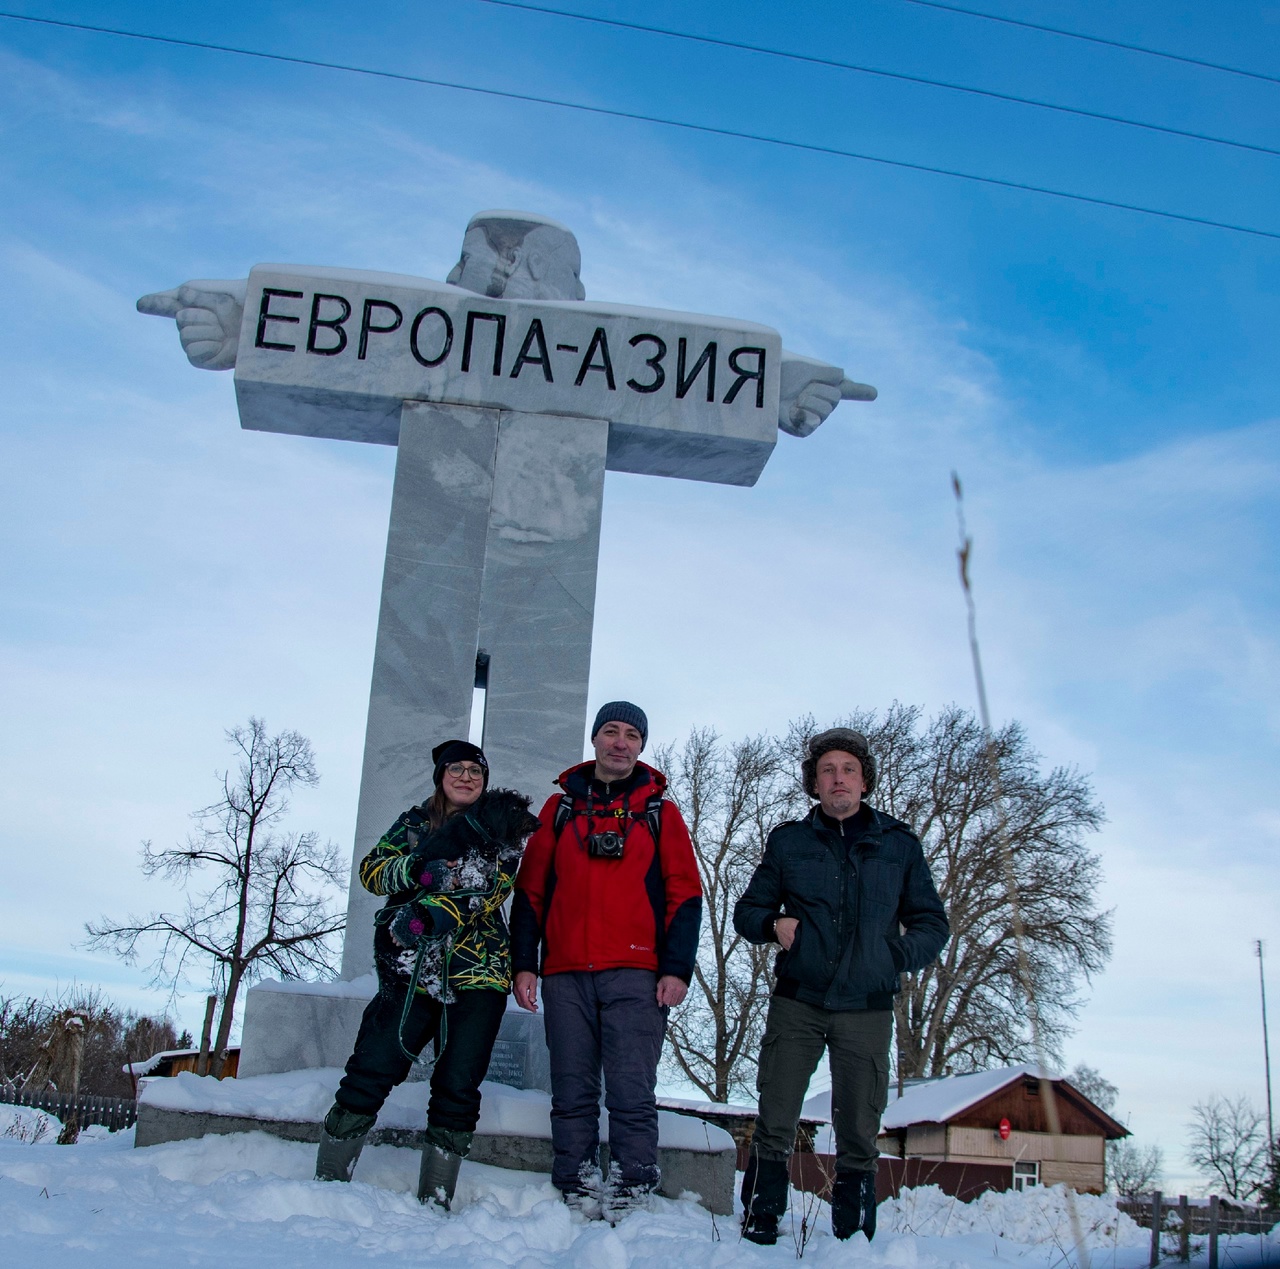 Трое туристов в понедельник посетили село Мраморское Груп...